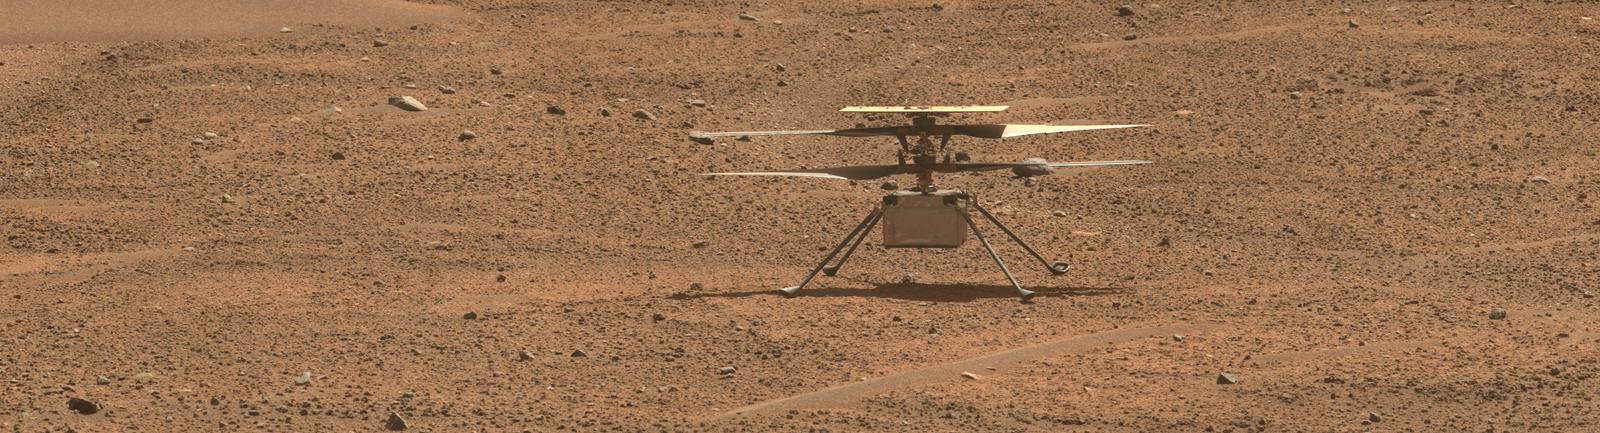 Trotek Ingenuity 2. avgusta na površju Marsa, fotografijo je posnel Perseverance. Foto: NASA/JPL-Caltech